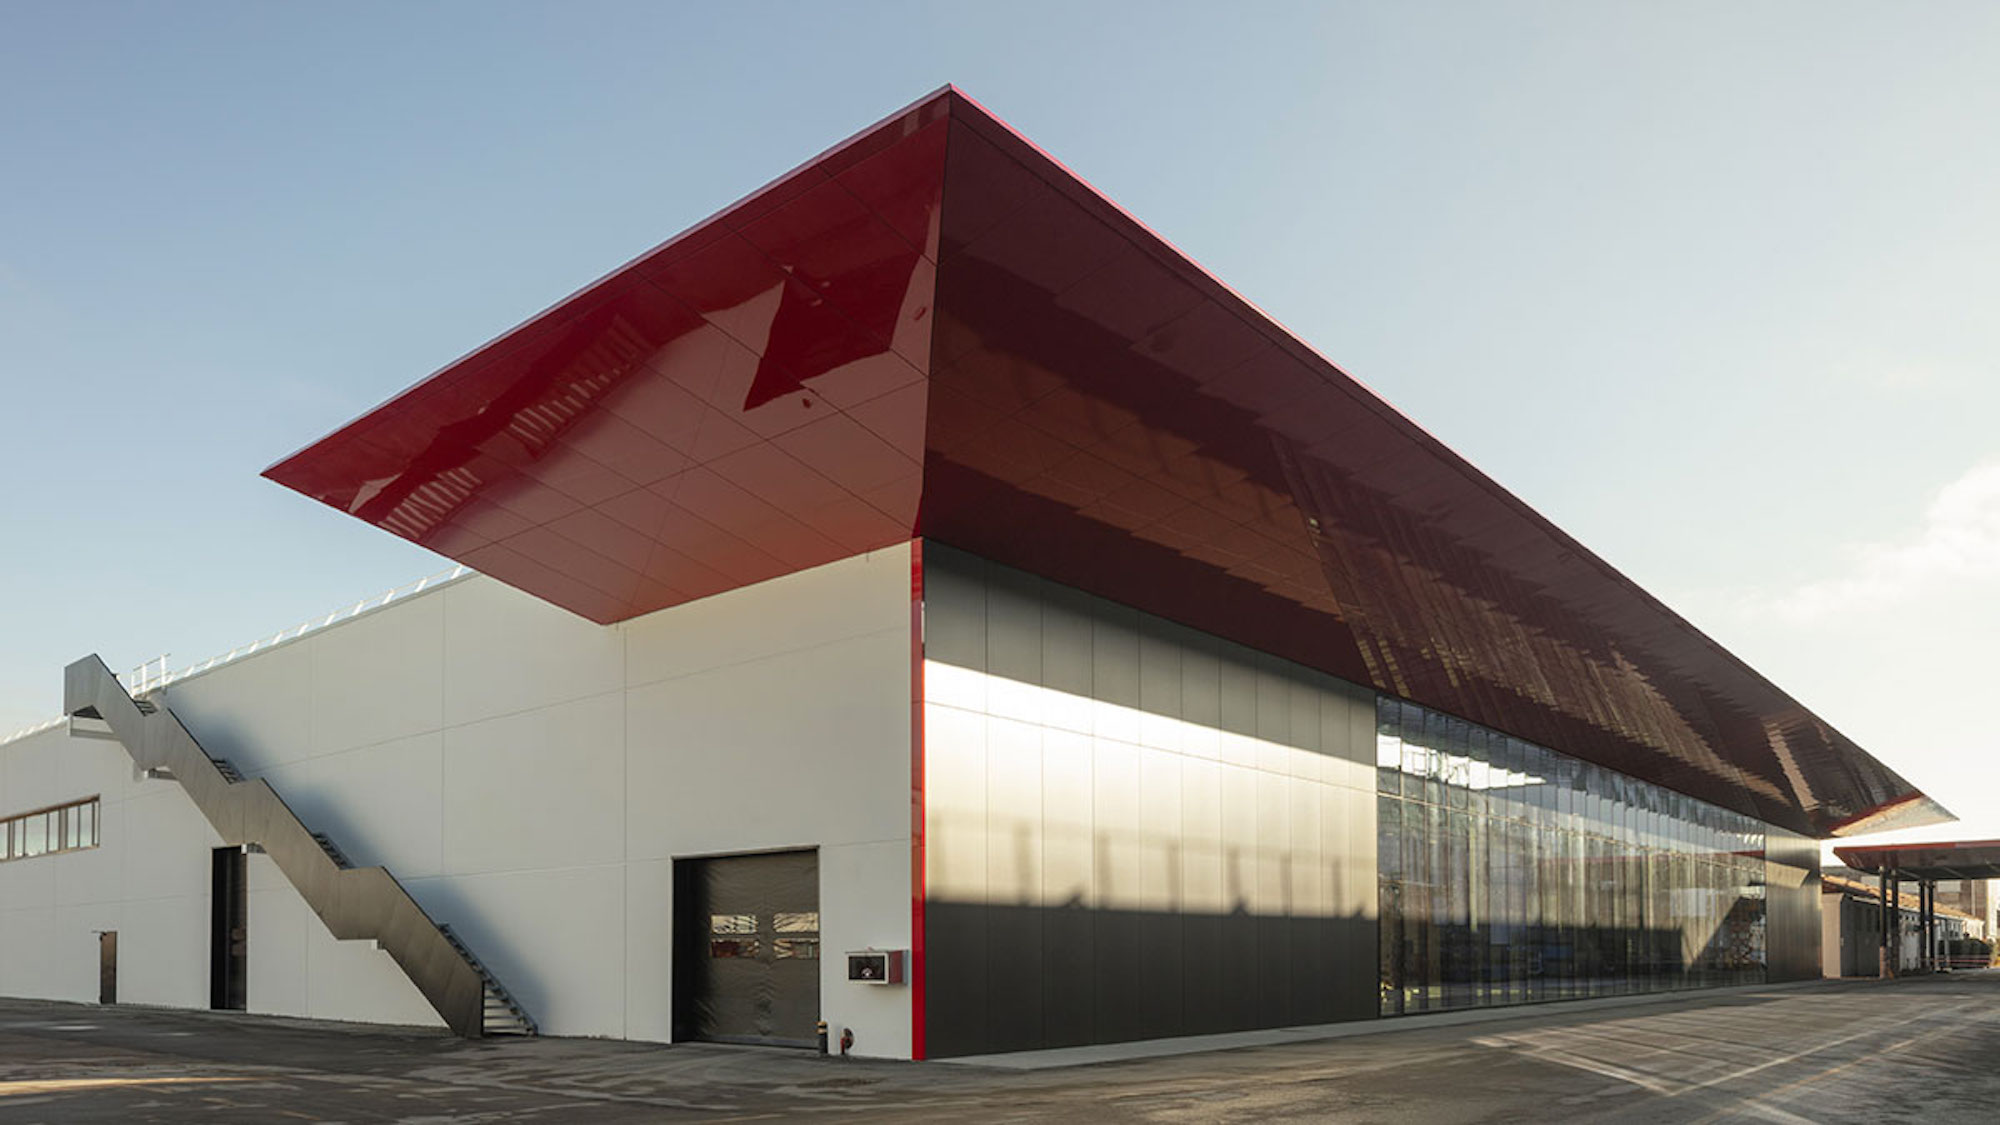 Ducati's all-new eco-friendly building, the Finitura e Delibera Estetica. Media sourced from Money.it.